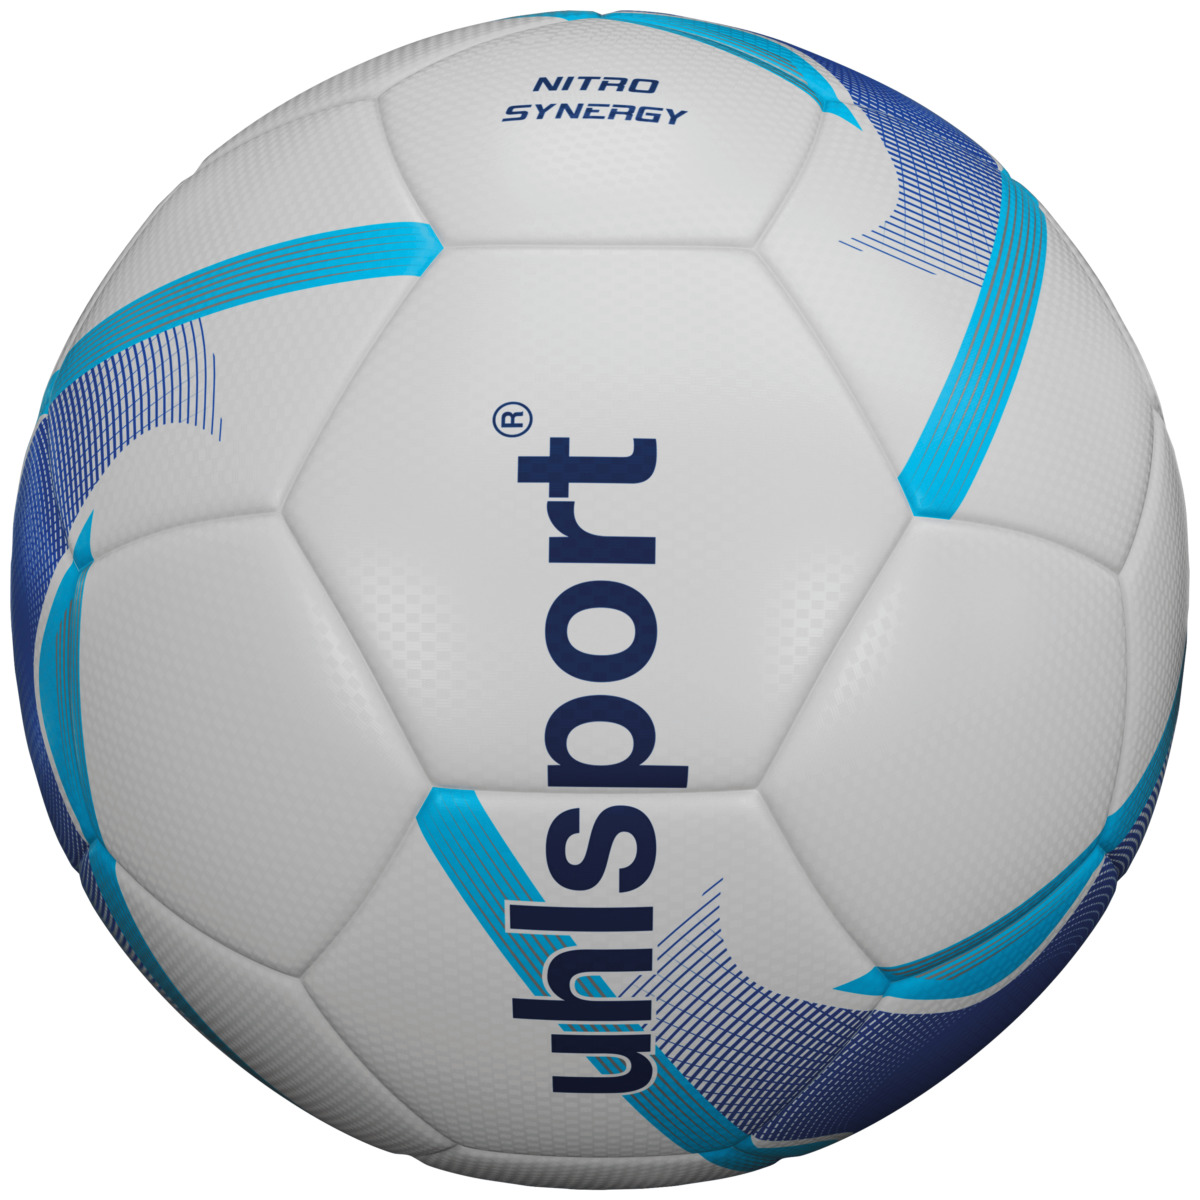 Uhlsport NITRO SYNERGY Fussball für Kunstrasen und Naturrasen 100166701